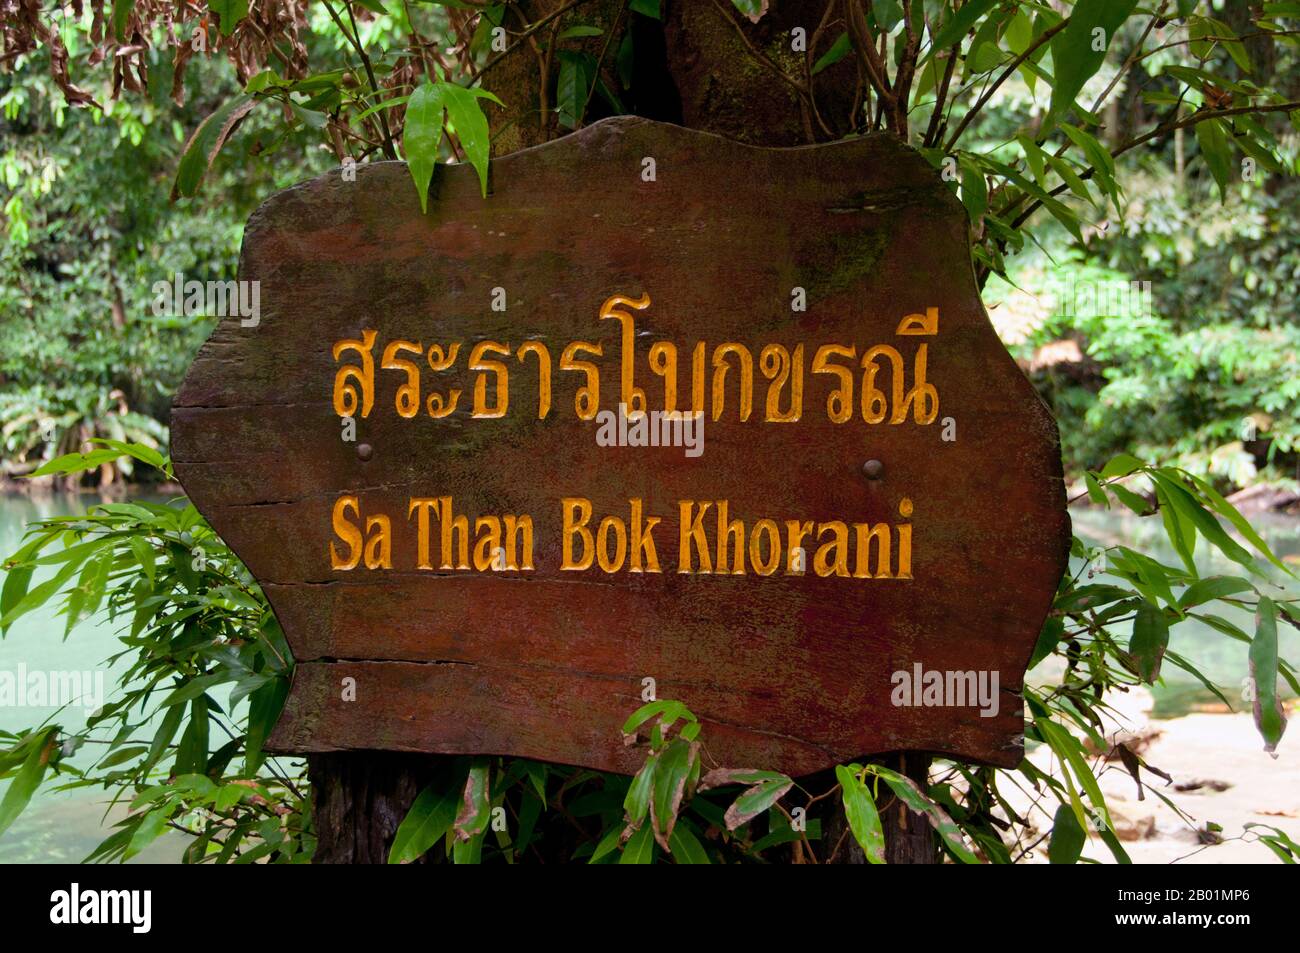 Thailandia: Cartello del parco, quindi Parco Nazionale Bokkharani, provincia di Krabi. Il Parco Nazionale di Than Bokkharani si trova nella provincia di Krabi a circa 45 chilometri (28 miglia) a nord-ovest della città di Krabi. Il parco copre un'area di 121 chilometri quadrati (47 miglia quadrate) ed è caratterizzato da una serie di affioramenti calcarei, foreste pluviali sempreverdi, foreste di mangrovie, torbiere e molte isole. Ci sono anche numerose grotte e complessi rupestri con alcune spettacolari stalagmiti e stalattiti. Il Bokkharani è incentrato su due famose grotte, Tham Lot e Tham Phi Hua. Foto Stock